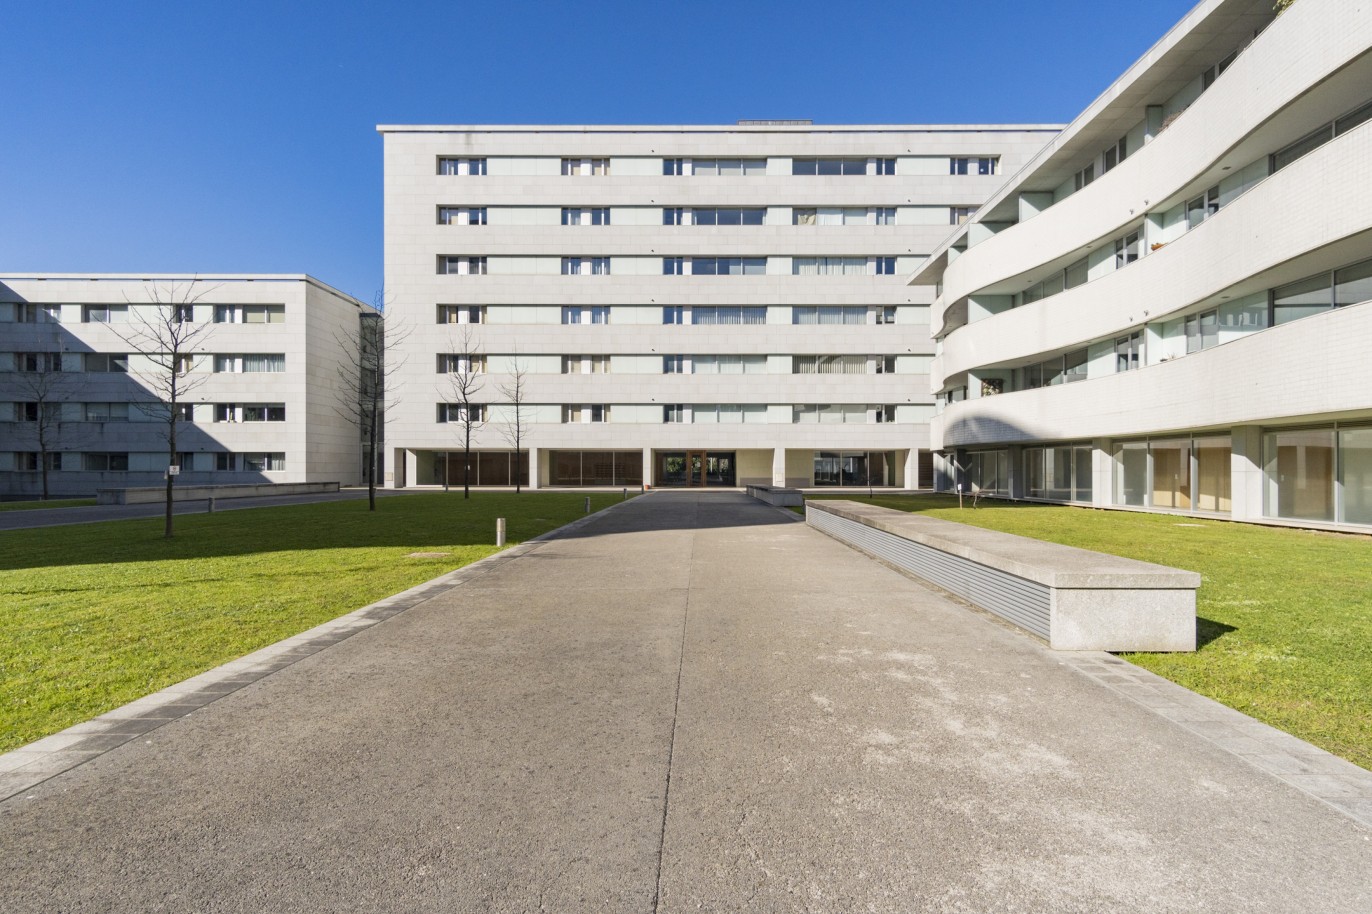 3 Bedroom Duplex Apartment with balcony, for sale, in Boavista, Porto, Portugal_217700